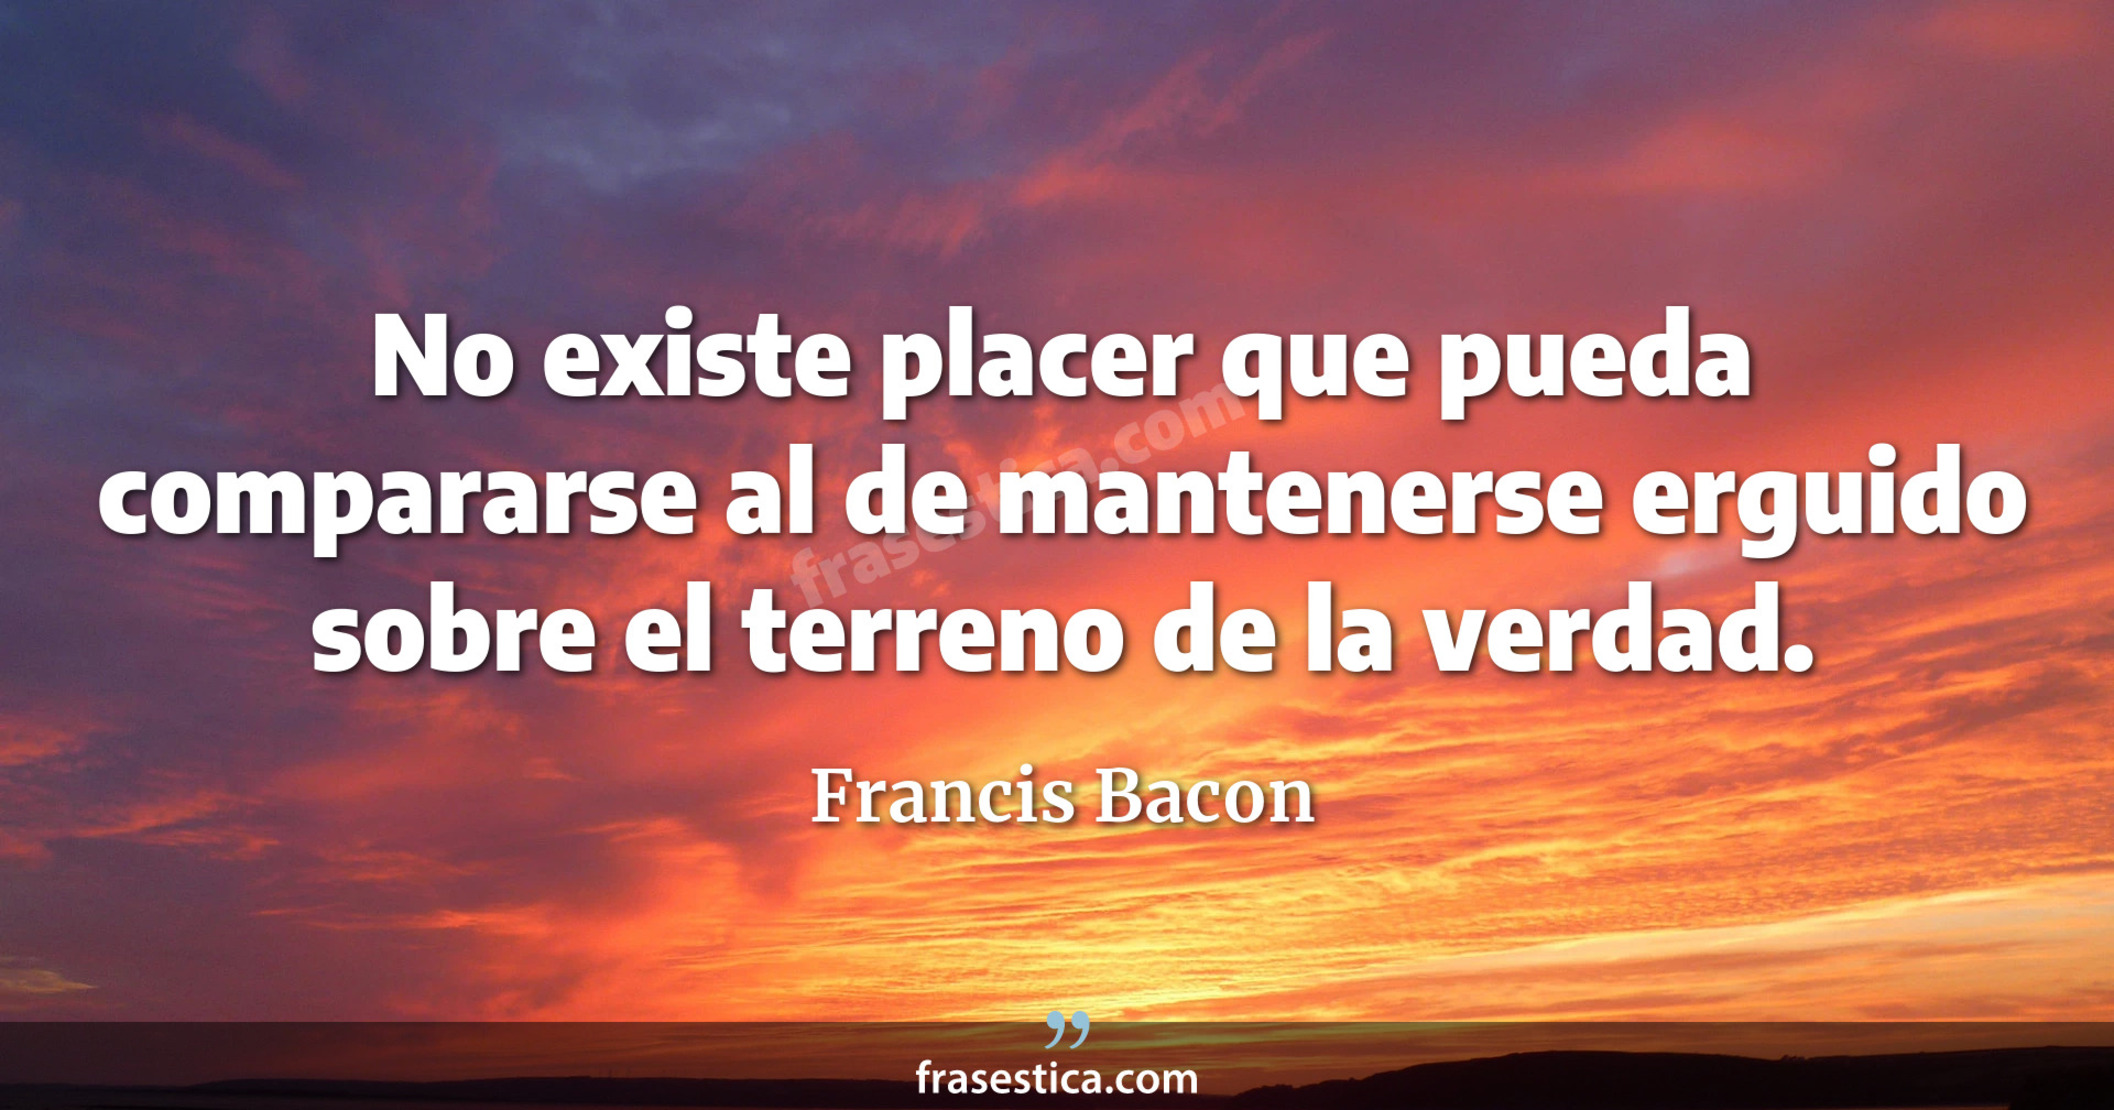 No existe placer que pueda compararse al de mantenerse erguido sobre el terreno de la verdad. - Francis Bacon